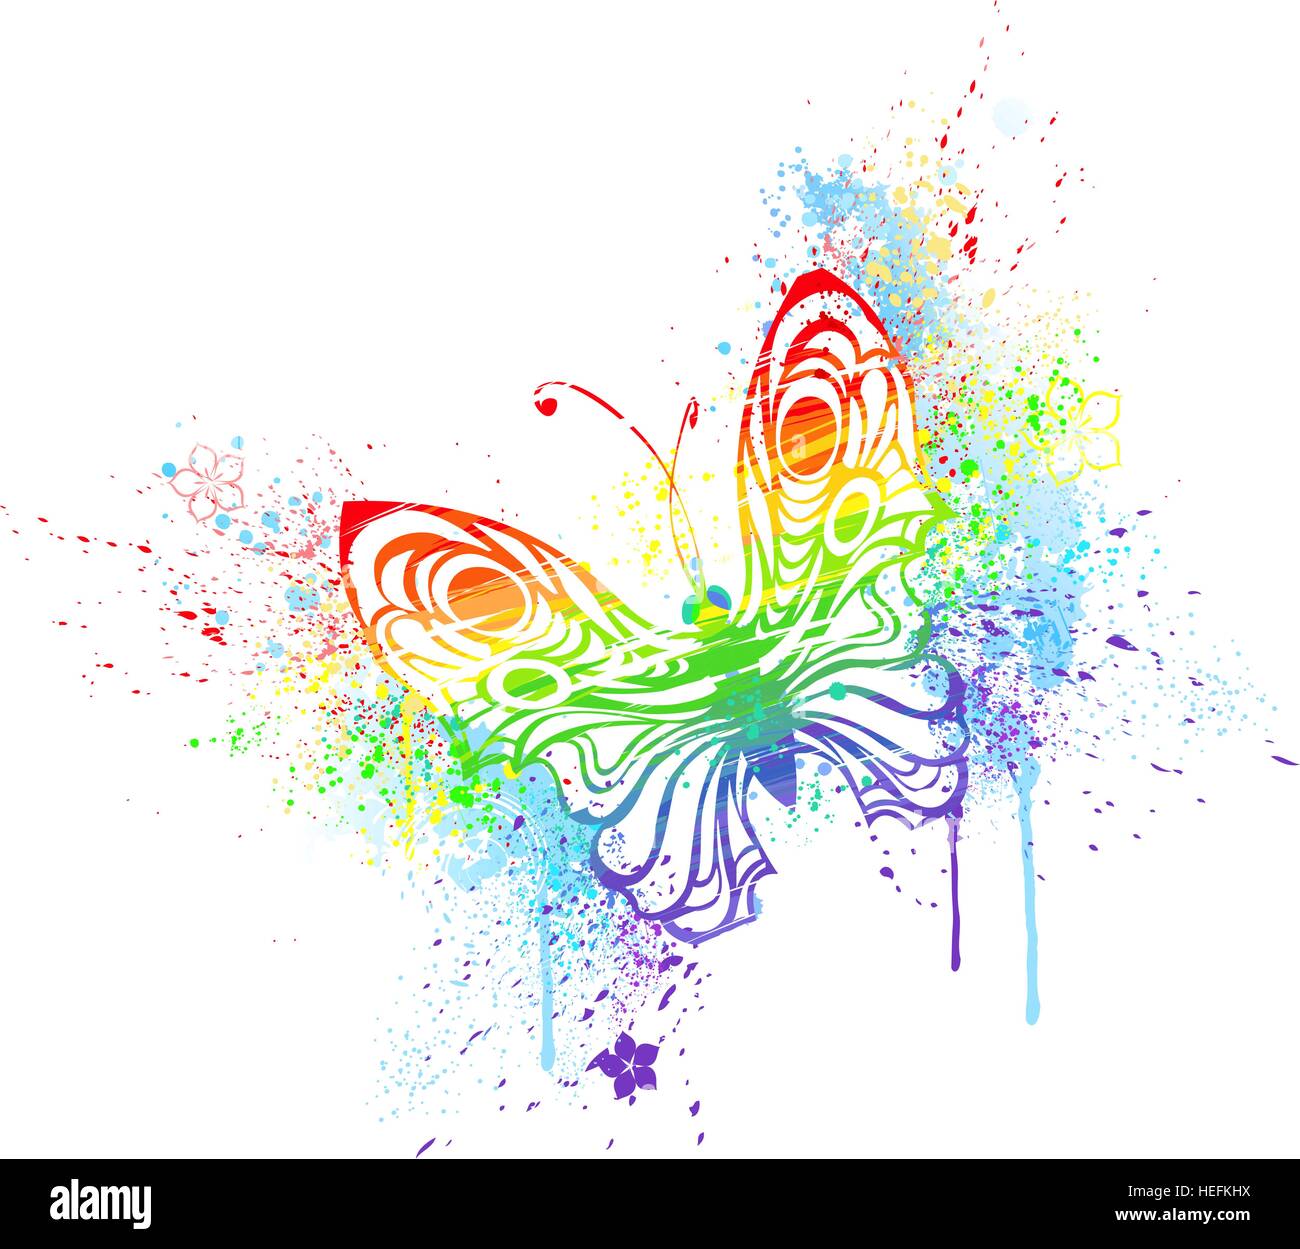 Farfalla stilizzata dipinta con colori dell'arcobaleno, su uno sfondo bianco. Illustrazione Vettoriale